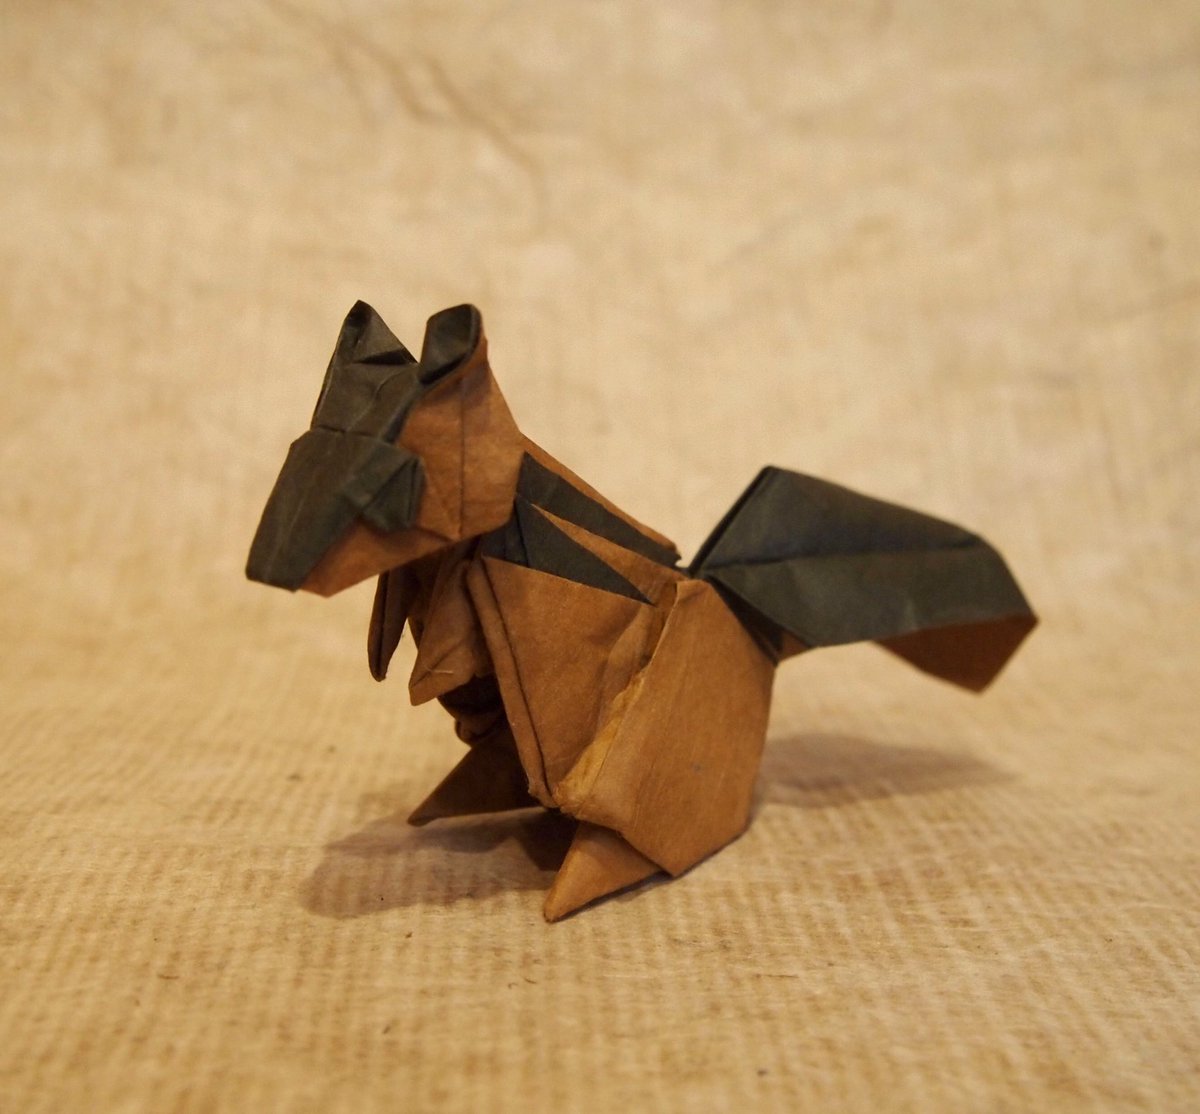 一匹柴犬 折り紙作品 シマリス 峯尾彰太朗さん創作 至高のおりがみより 折り手 一匹柴犬 かわいい 一枚折りのシマリスのデザインで1番好きかも 折り紙作品